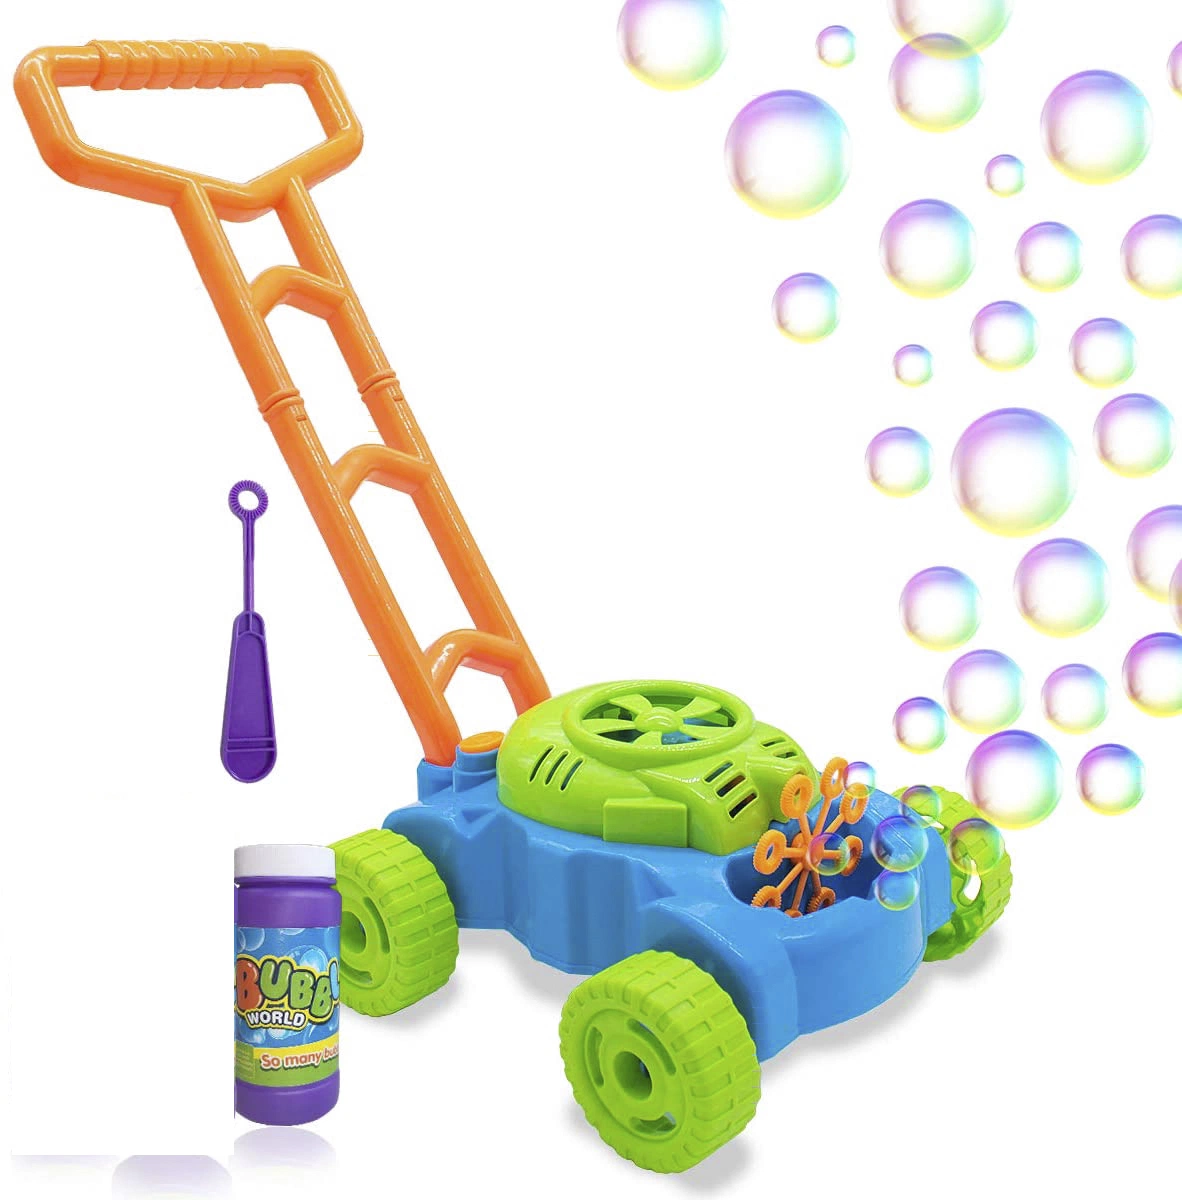 Amazon Hot Verkaufen Rasen Spiele Bubble Mower Outdoor Spielzeug Blase Gebläse-Maschine für Kleinkinder